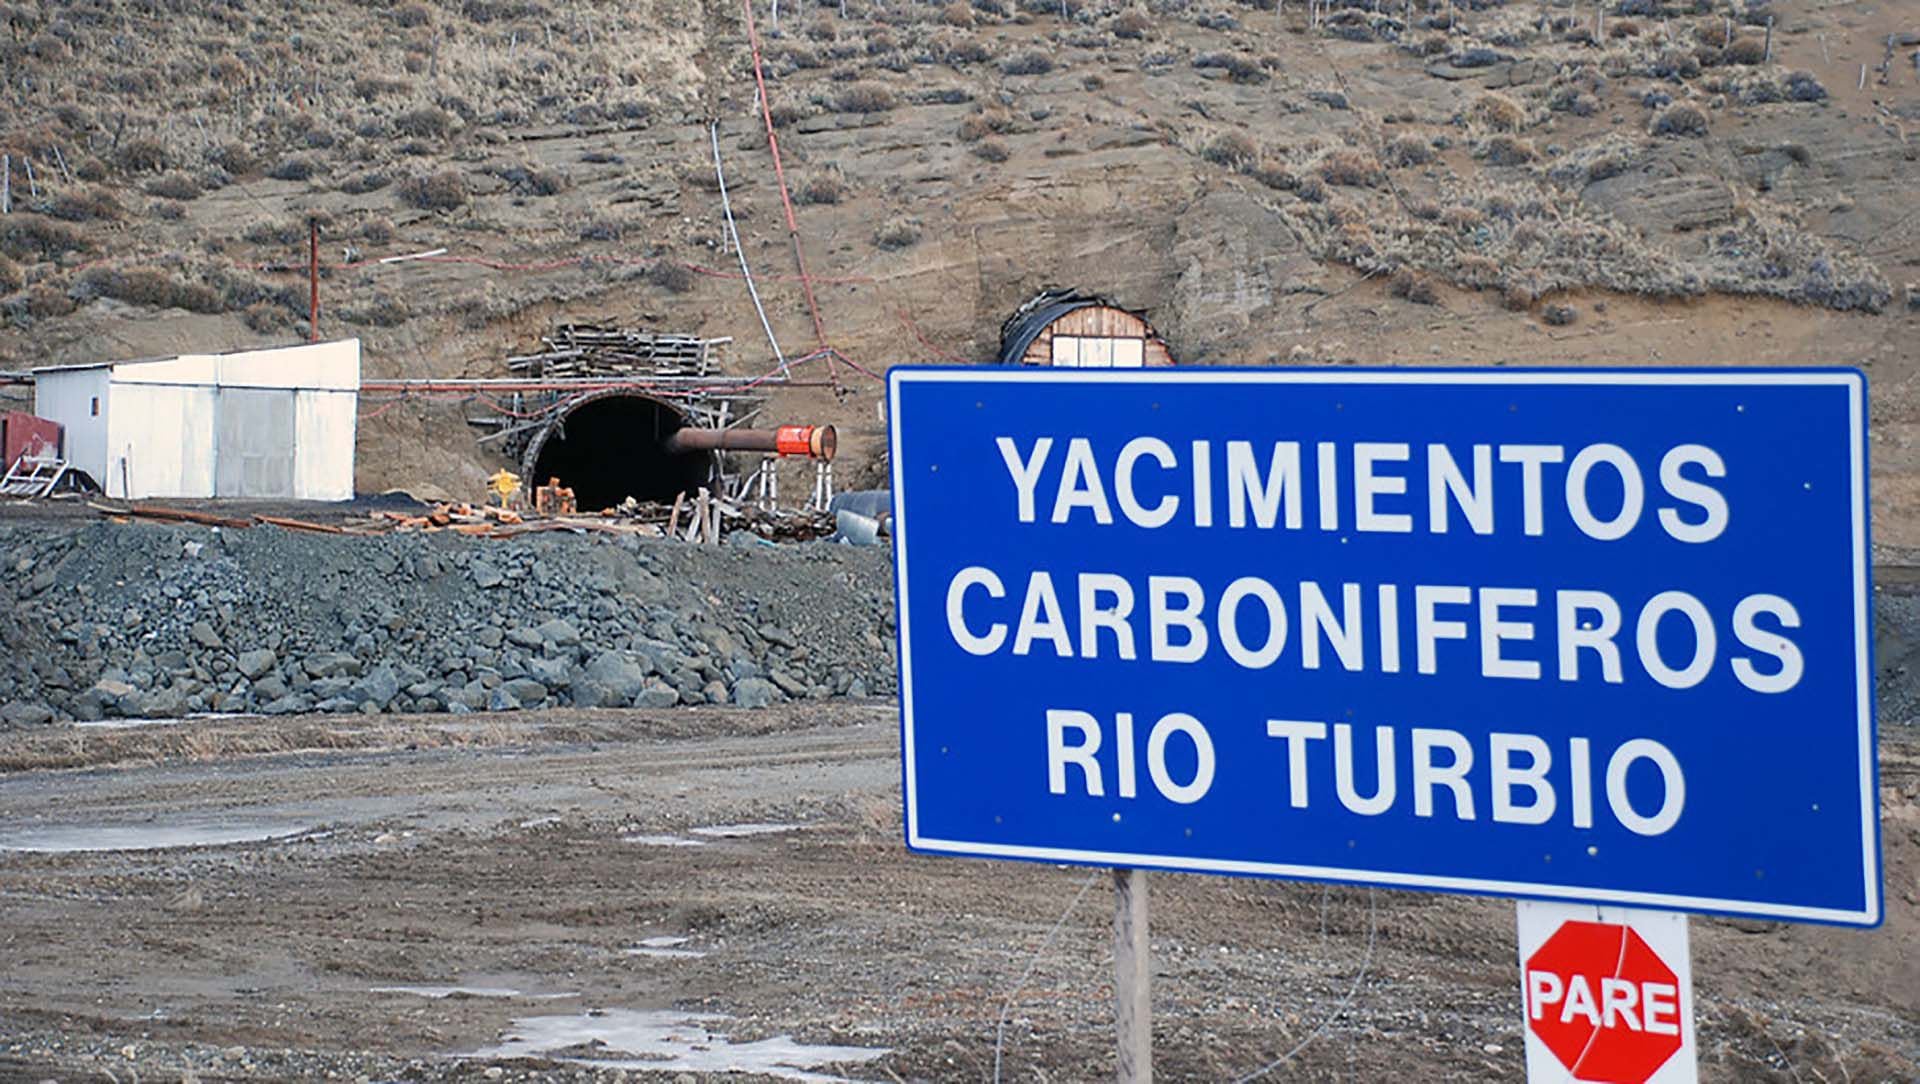  Yacimiento Carbonifero Río Turbio es una de las principales empresas energéticas del país (OPI Santa Cruz)